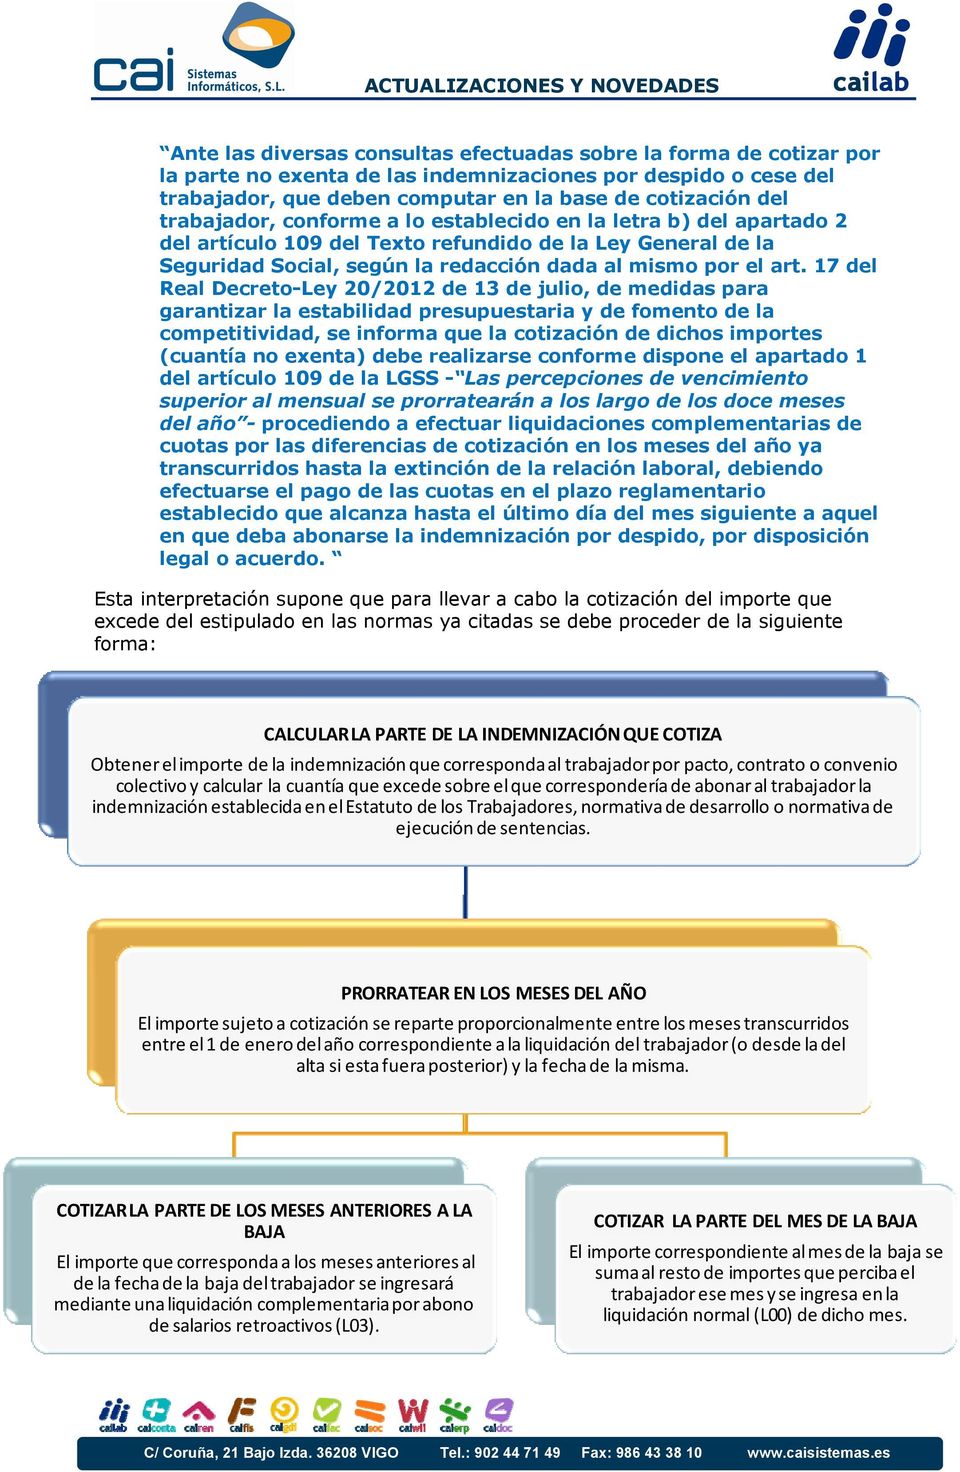 17 del Real Decreto-Ley 20/2012 de 13 de julio, de medidas para garantizar la estabilidad presupuestaria y de fomento de la competitividad, se informa que la cotización de dichos importes (cuantía no